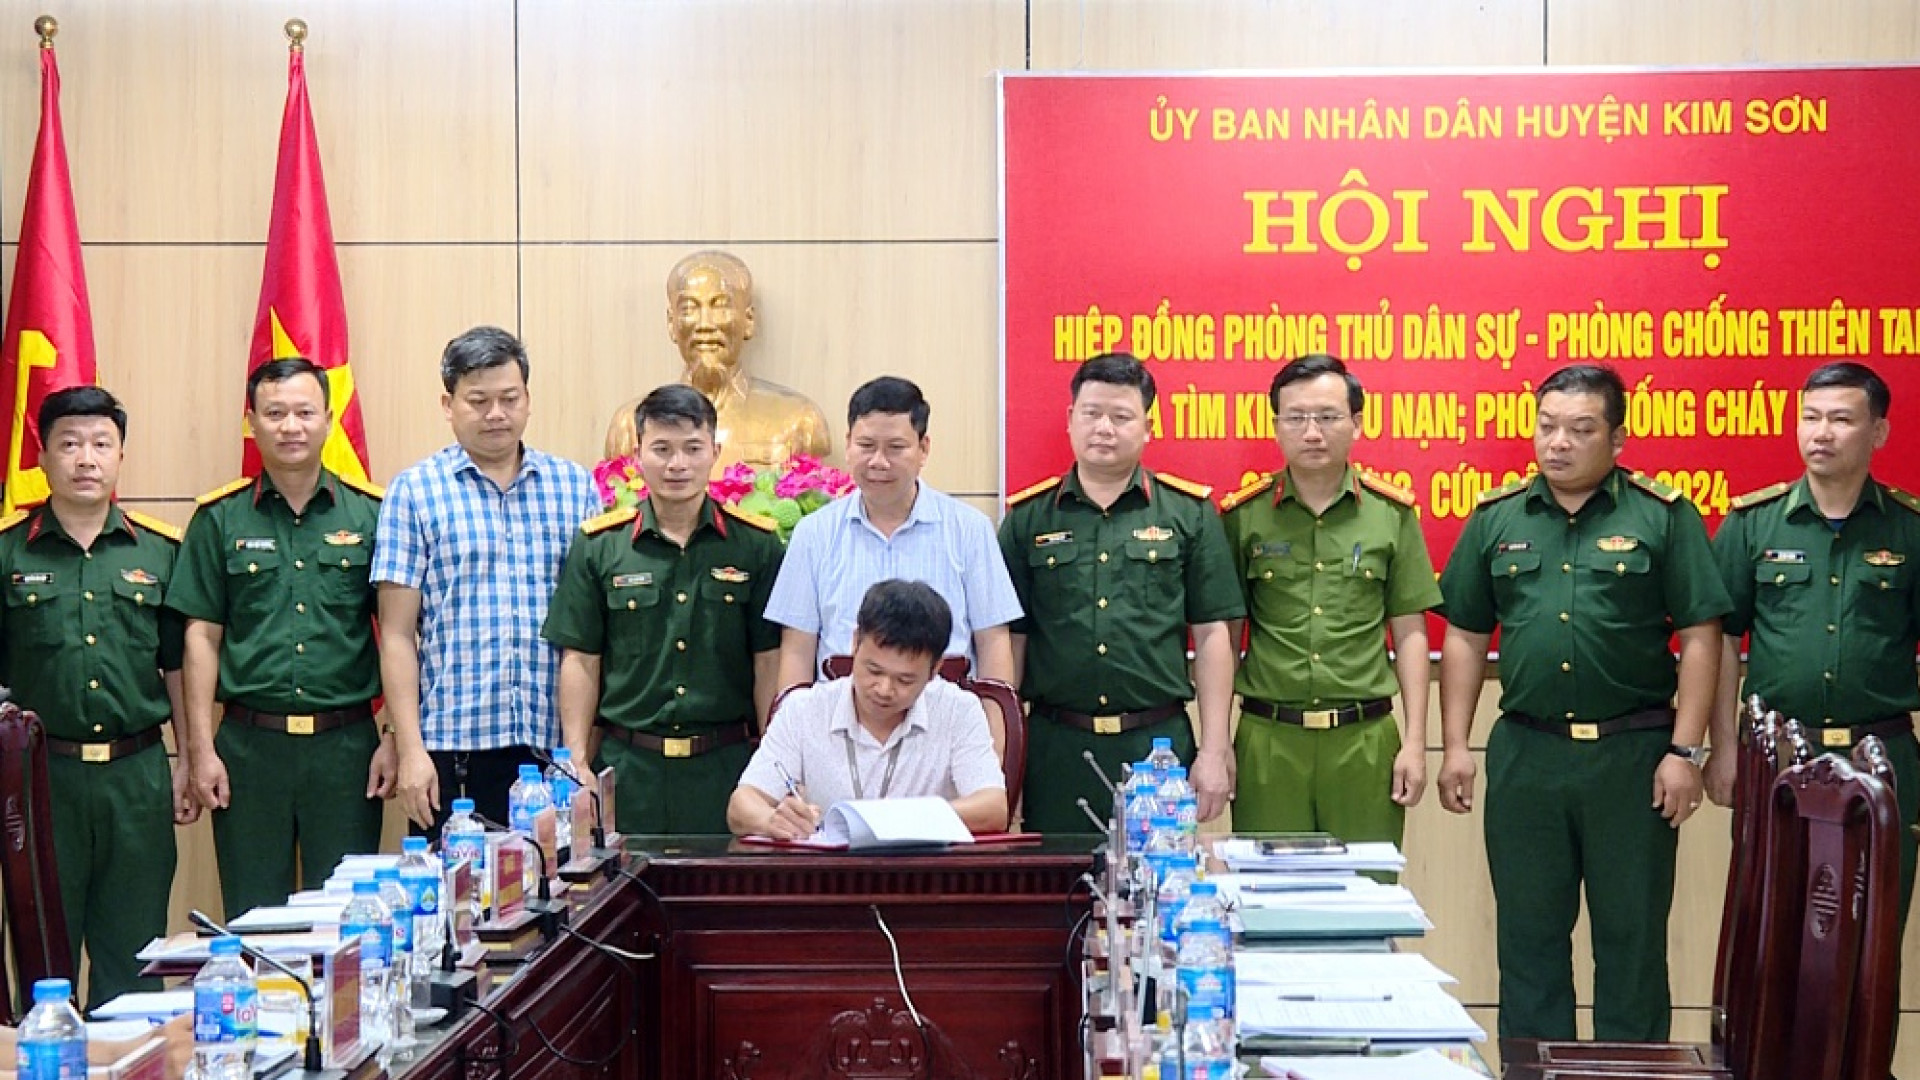 Huyện Kim Sơn hiệp đồng phòng thủ dân sự, phòng chống thiên tai và tìm kiếm cứu nạn năm 2024